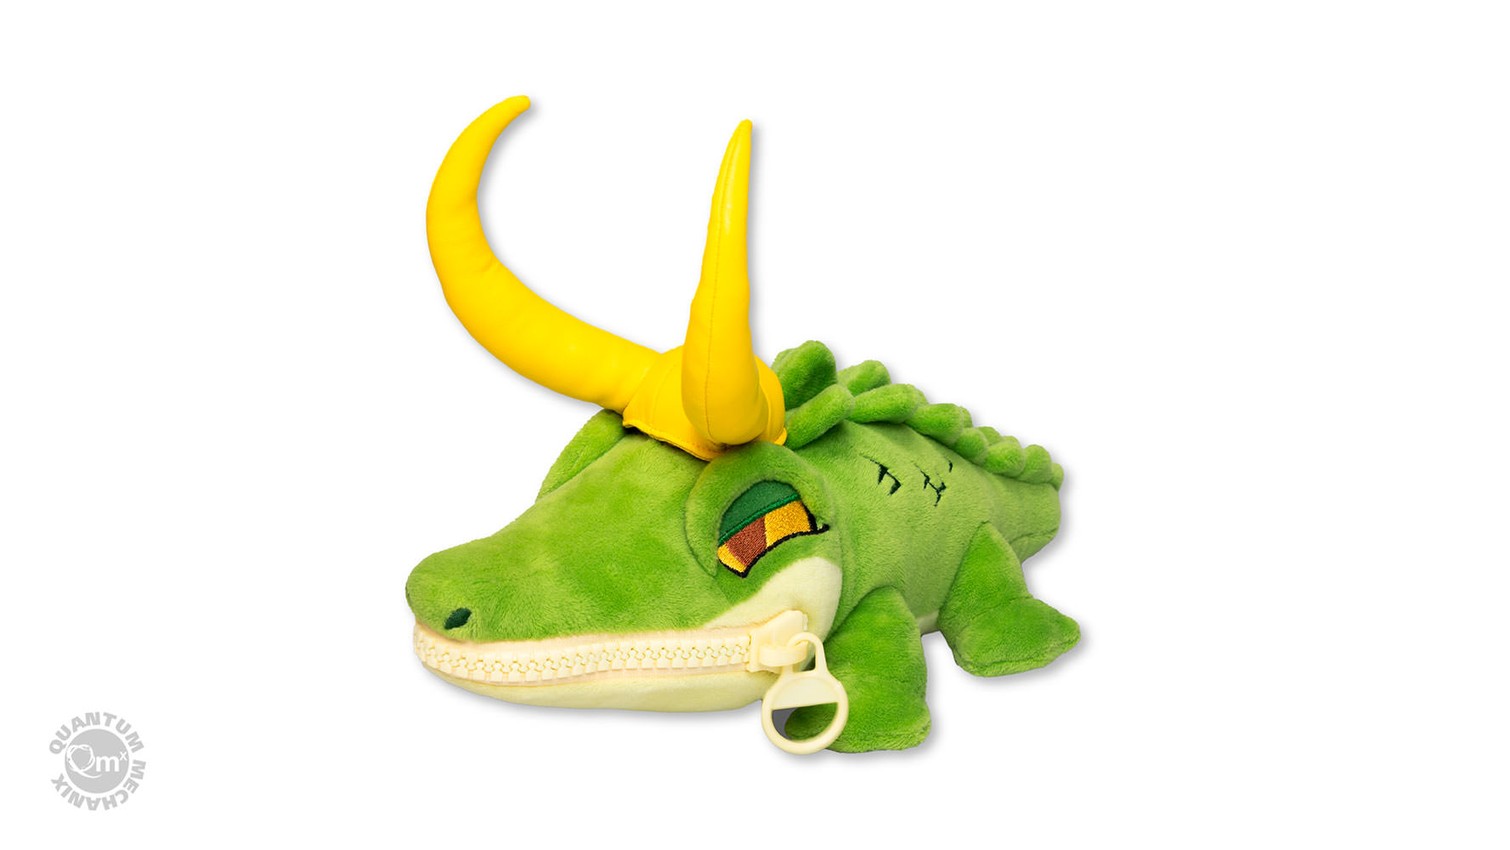 Alligator Loki Zippermouth- Prototype Shown